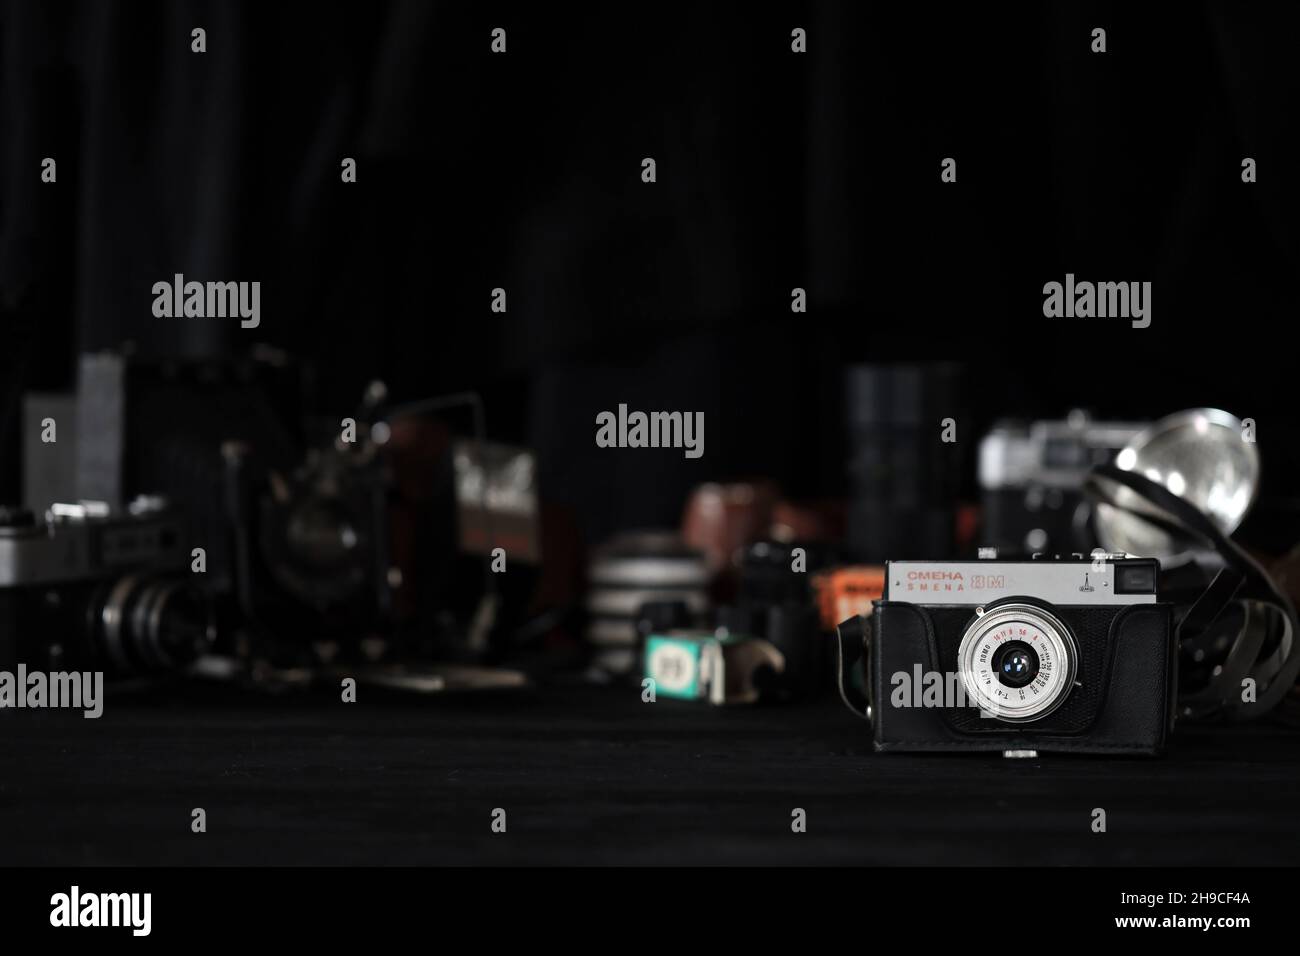 KHARKOV, UKRAINE - 27. APRIL 2021: Smena 8m Filmkamera und eine weitere alte Retro-Fotoausrüstung auf schwarzem Holztisch in der Dunkelkammer des Fotografen. Ph Stockfoto